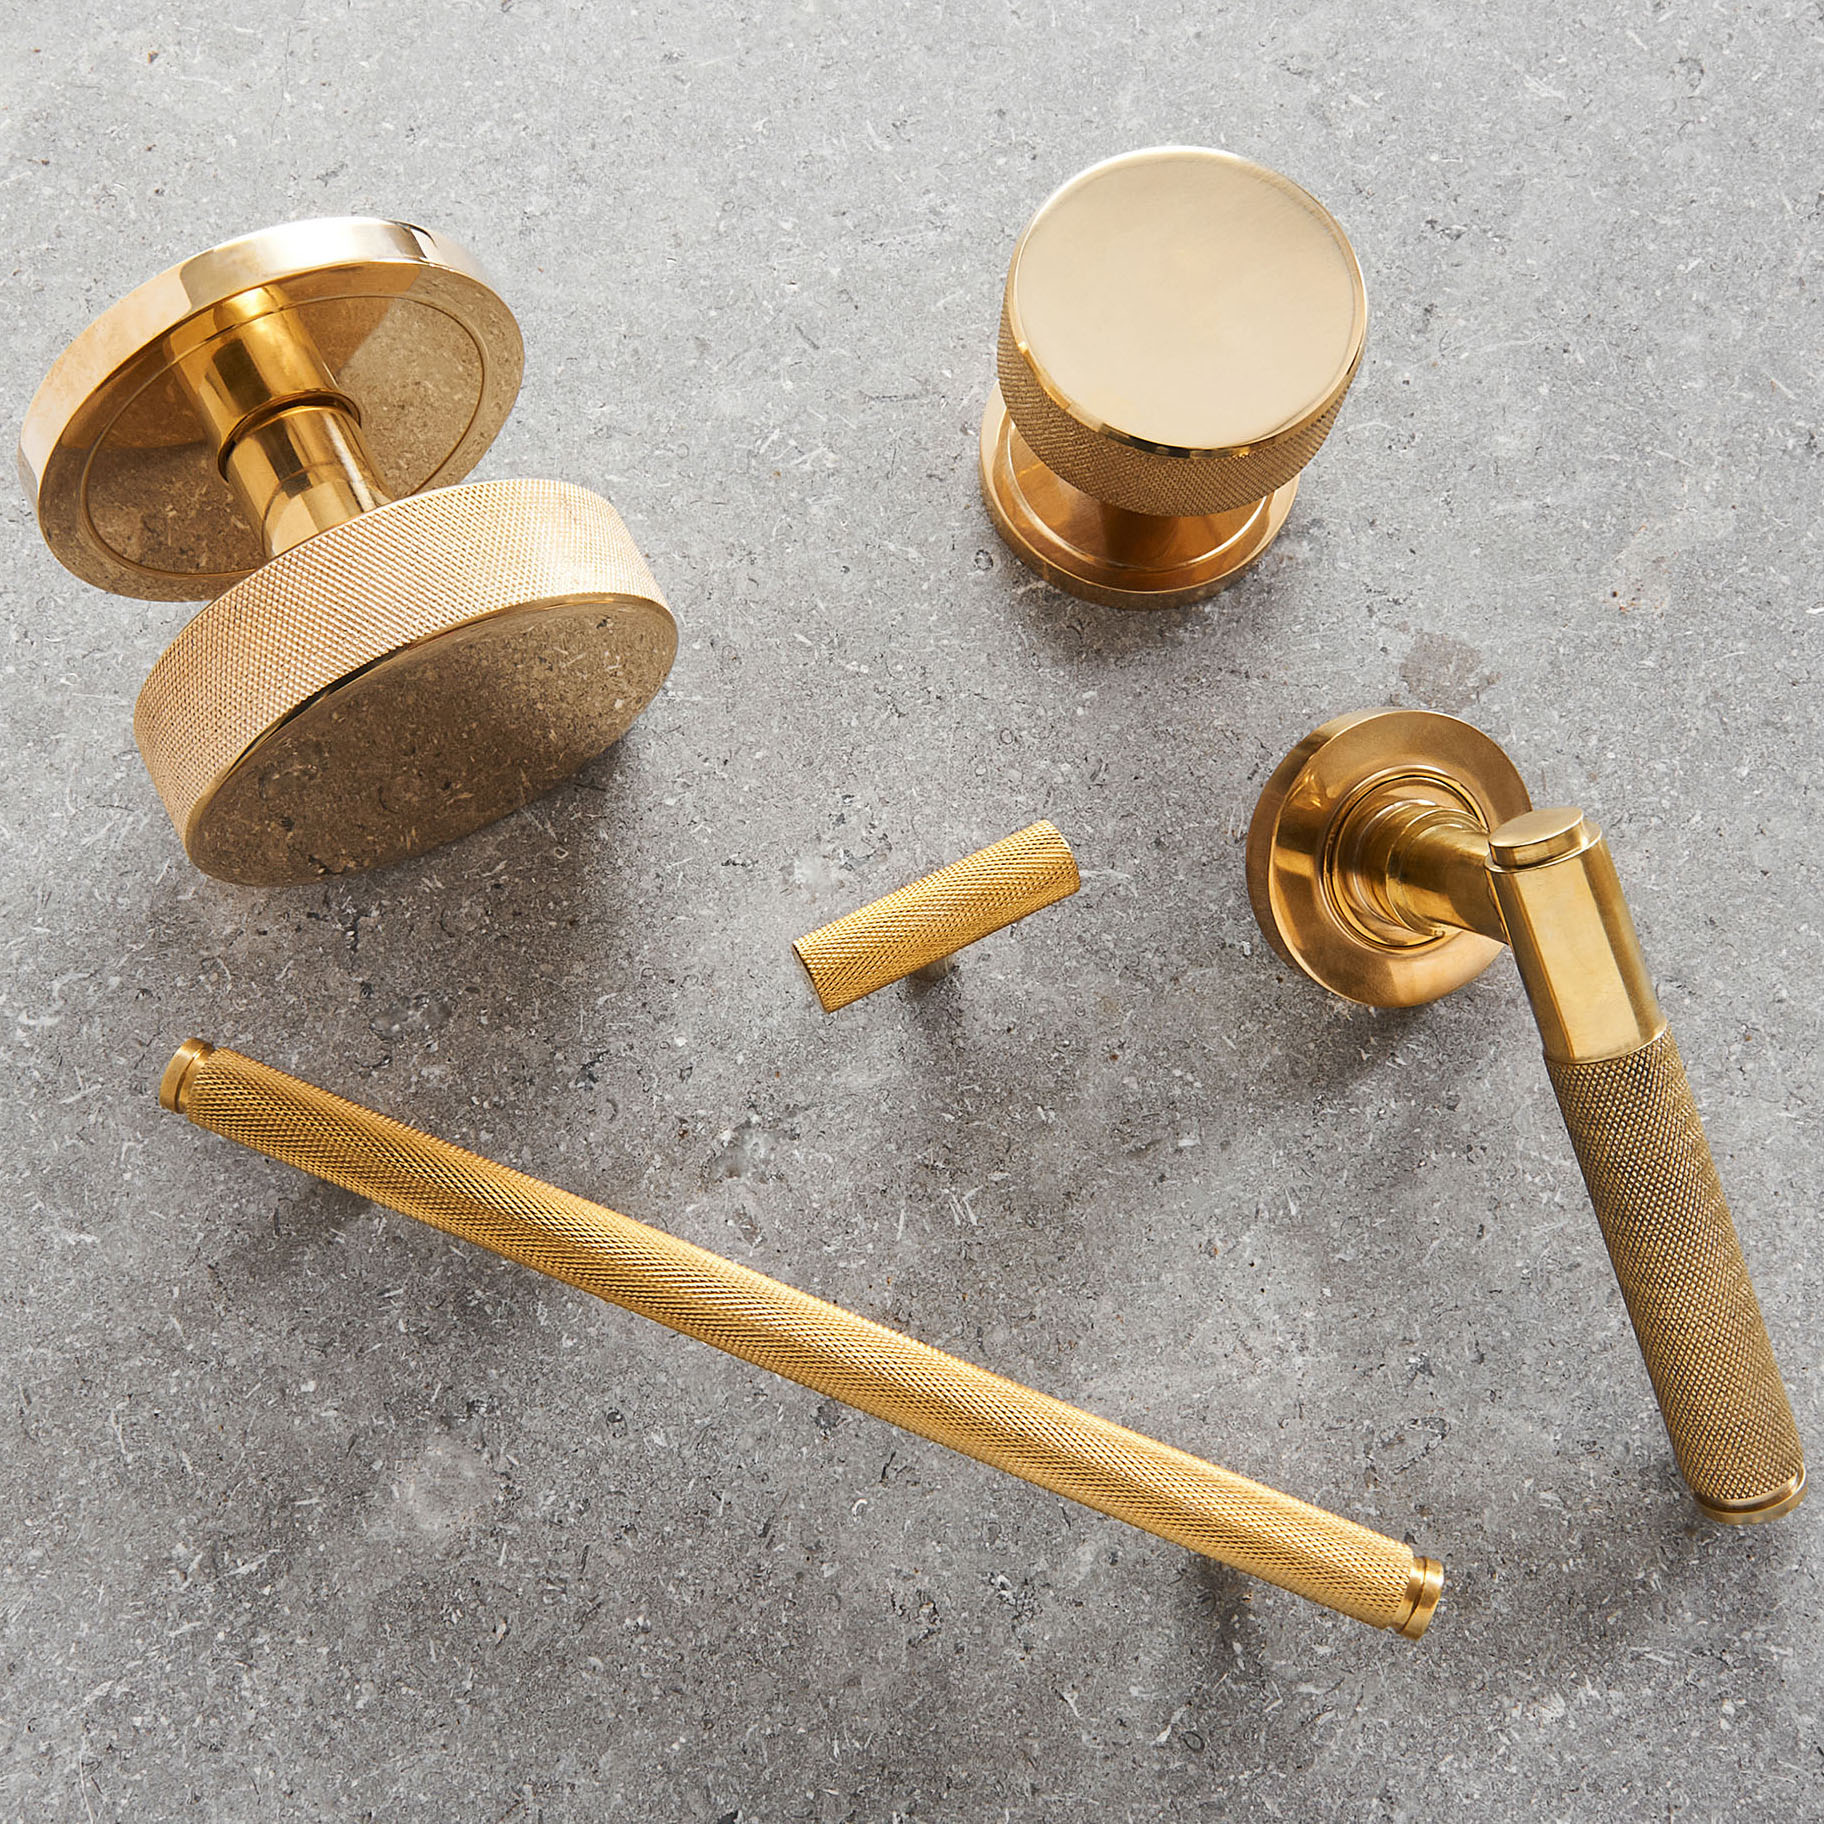 knurled pull handle (medium) polished brass